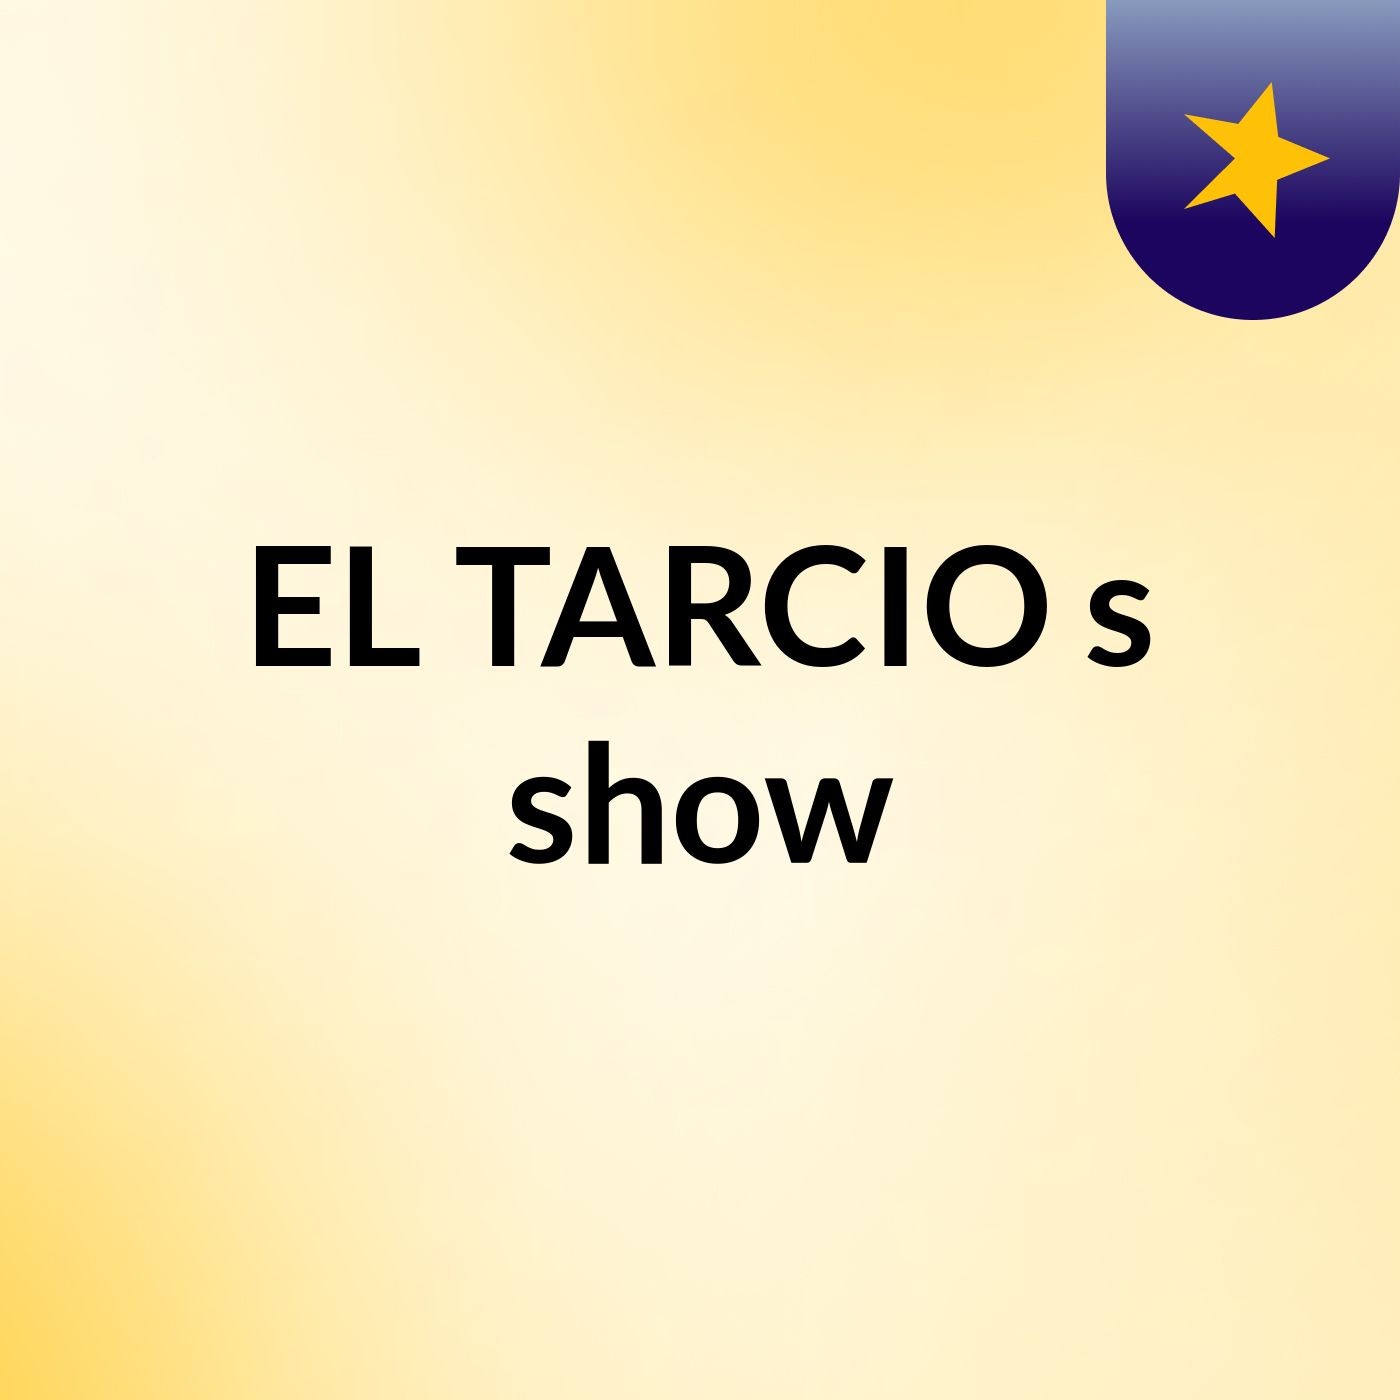 EL TARCIO's show